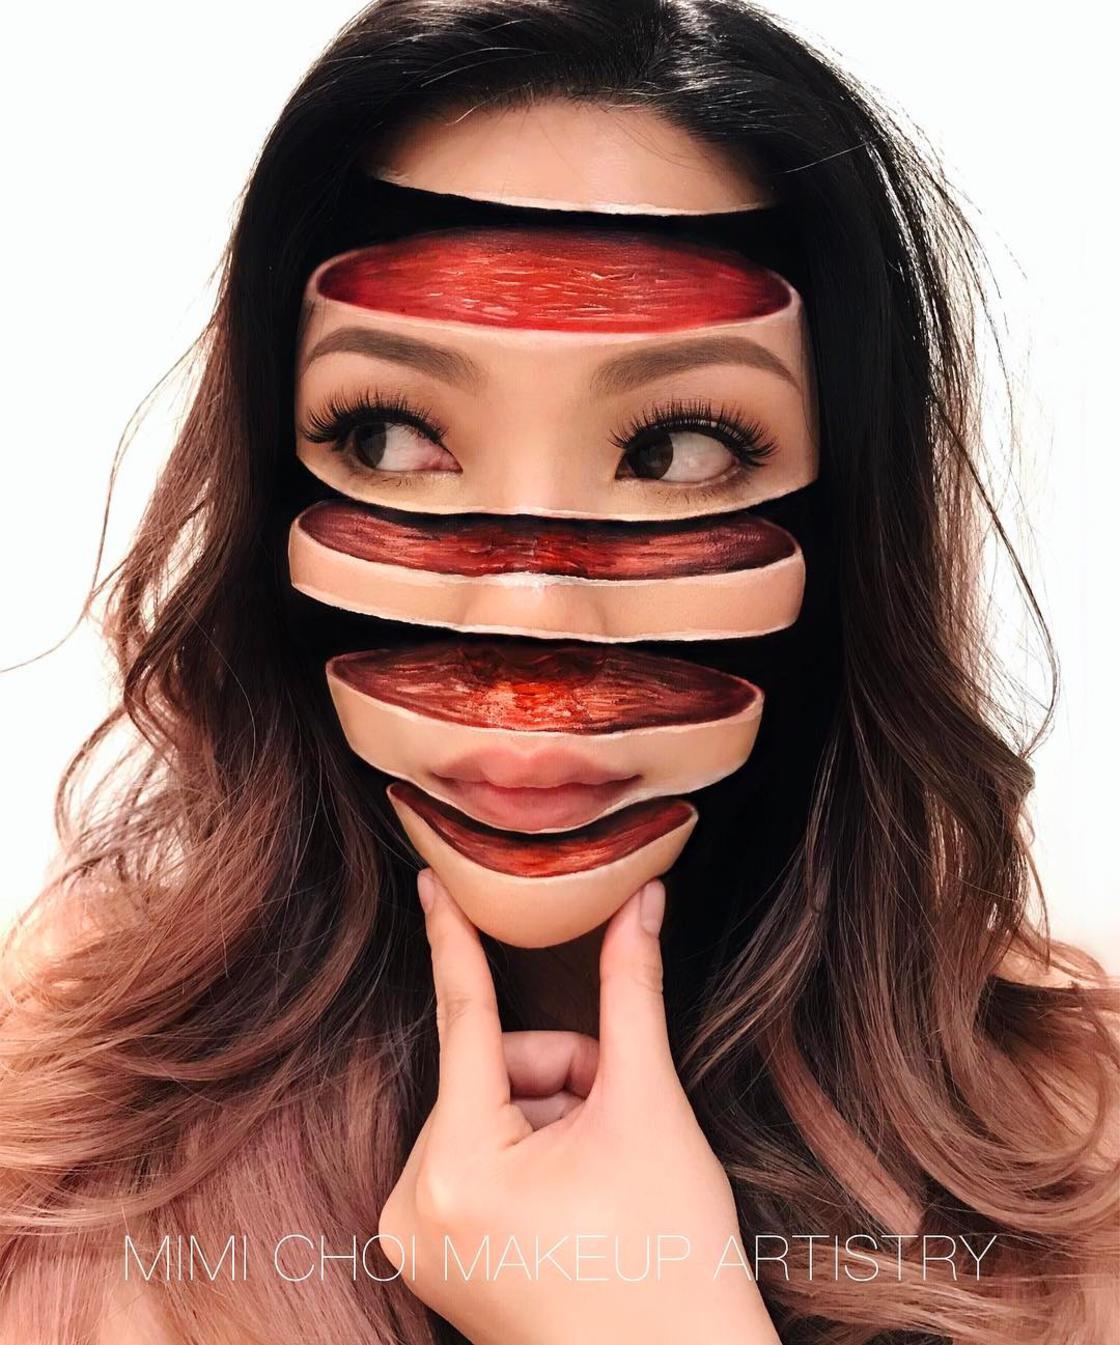 Cette artiste réalise des maquillages troublants de réalisme #10